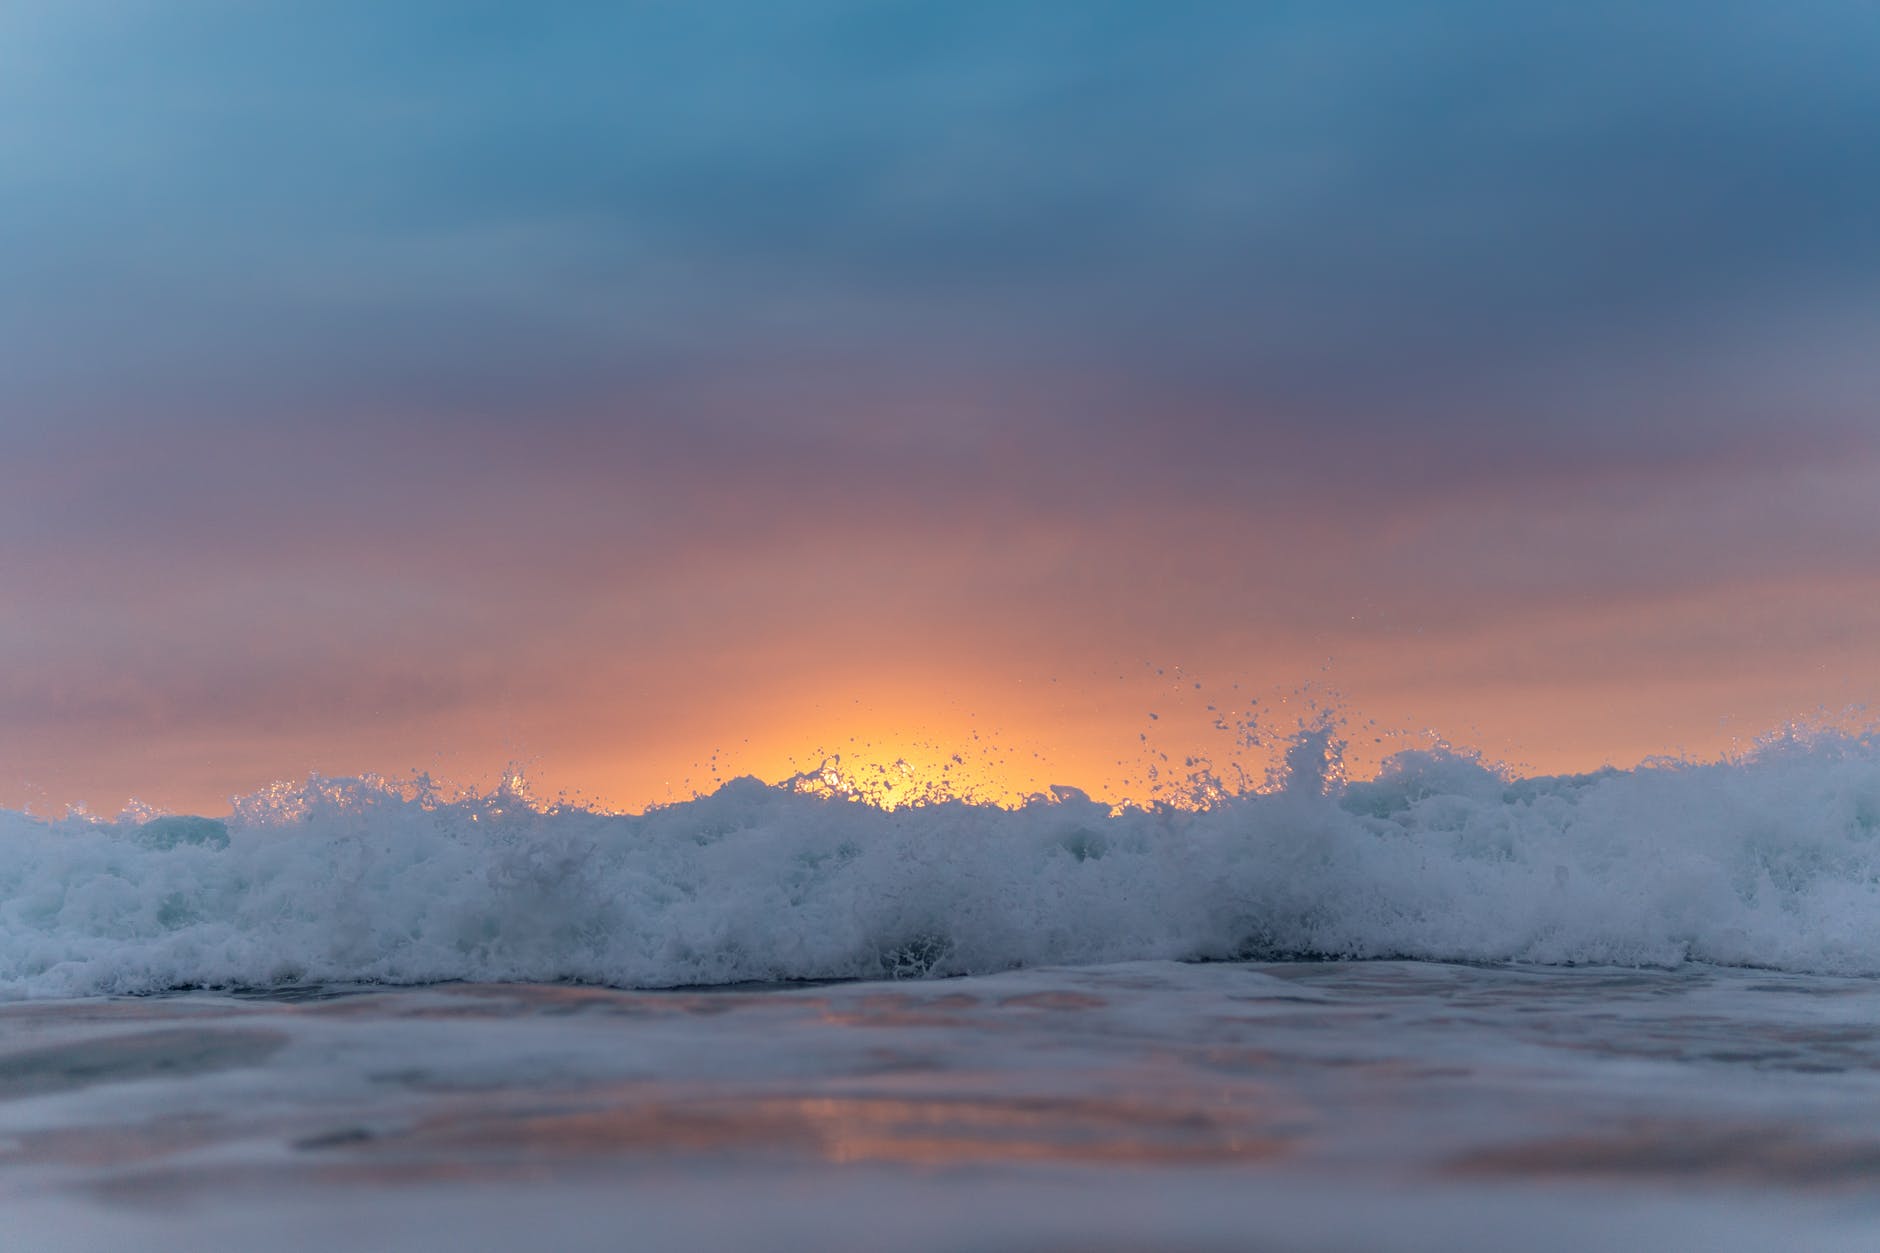 Surf crashing on the shore at sunset